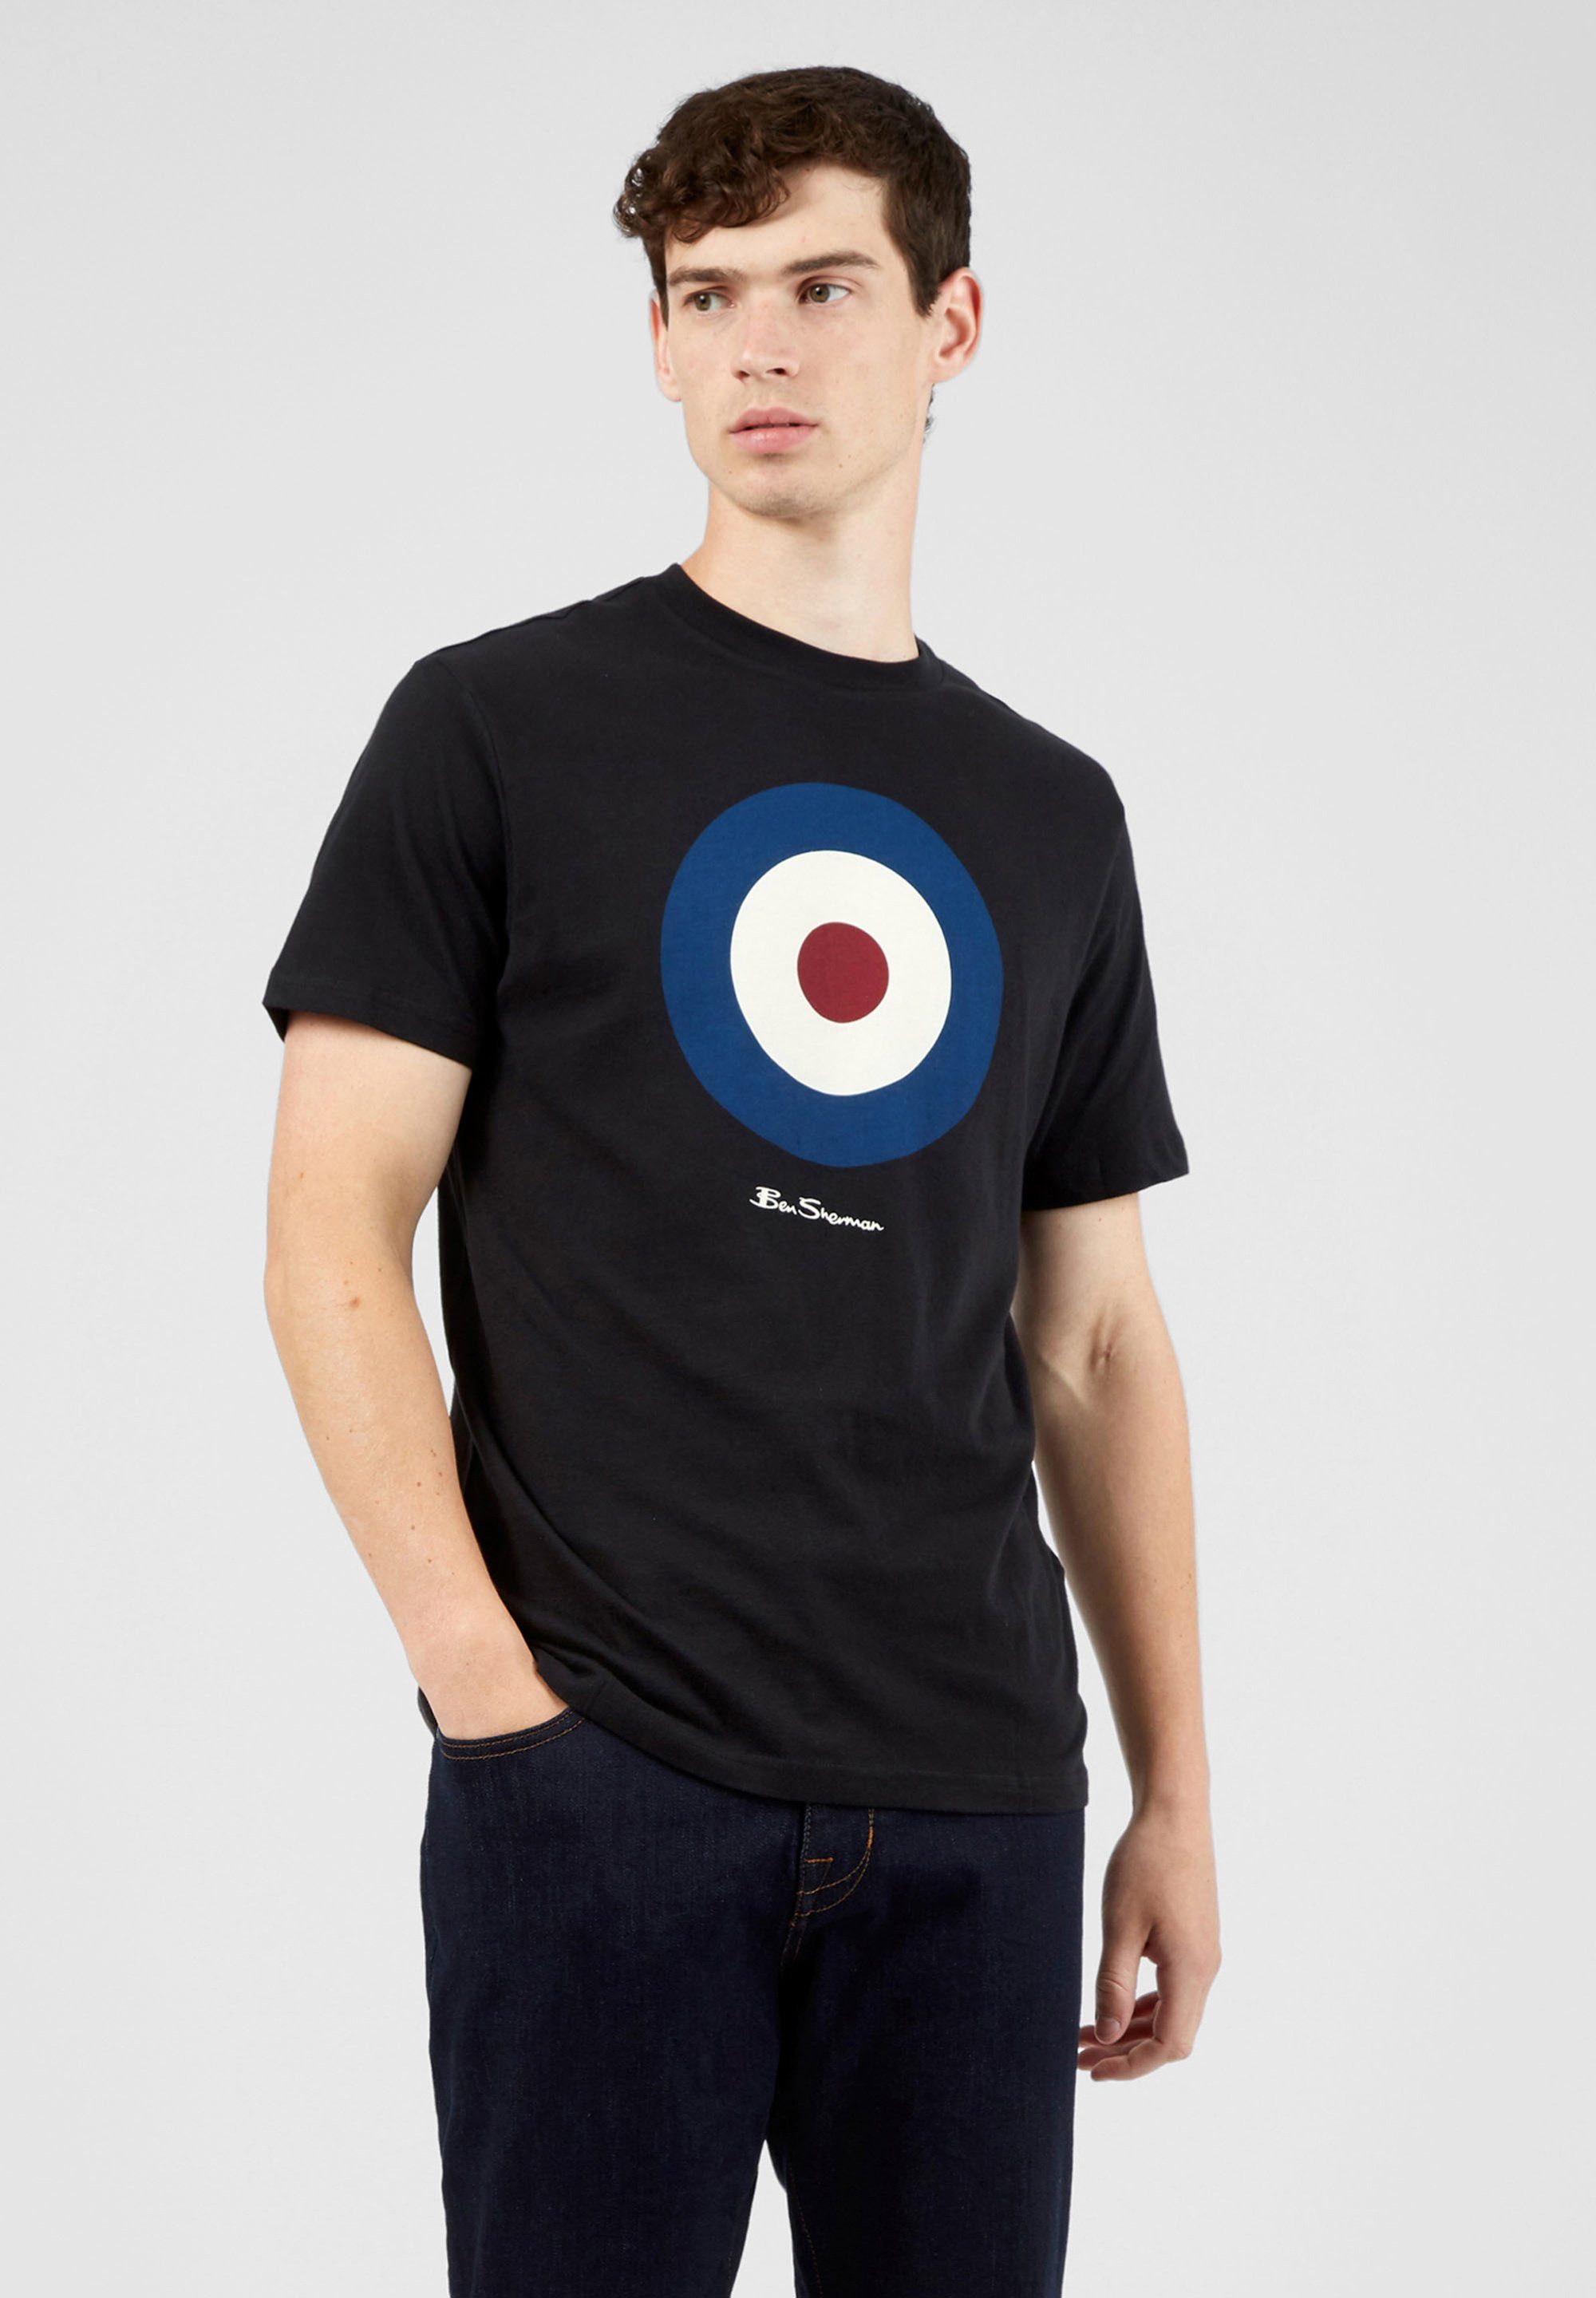 Ben Sherman T-Shirt Signature Target Tee Grafisch bedrucktes T-Shirt schwarz | T-Shirts